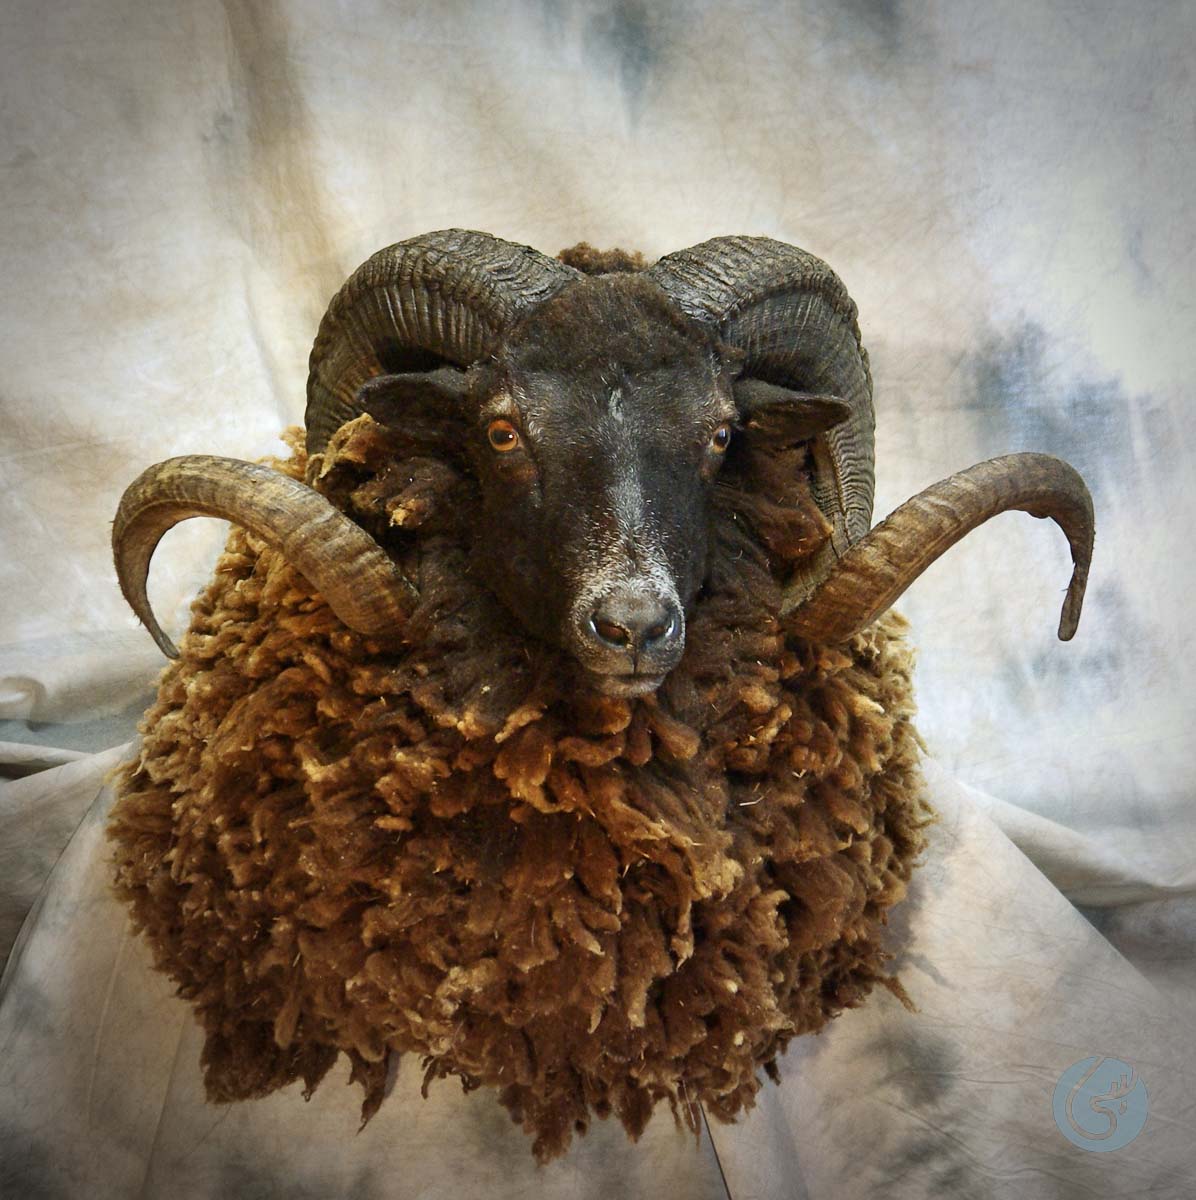 Ovce arapawa (Arapawa sheep)